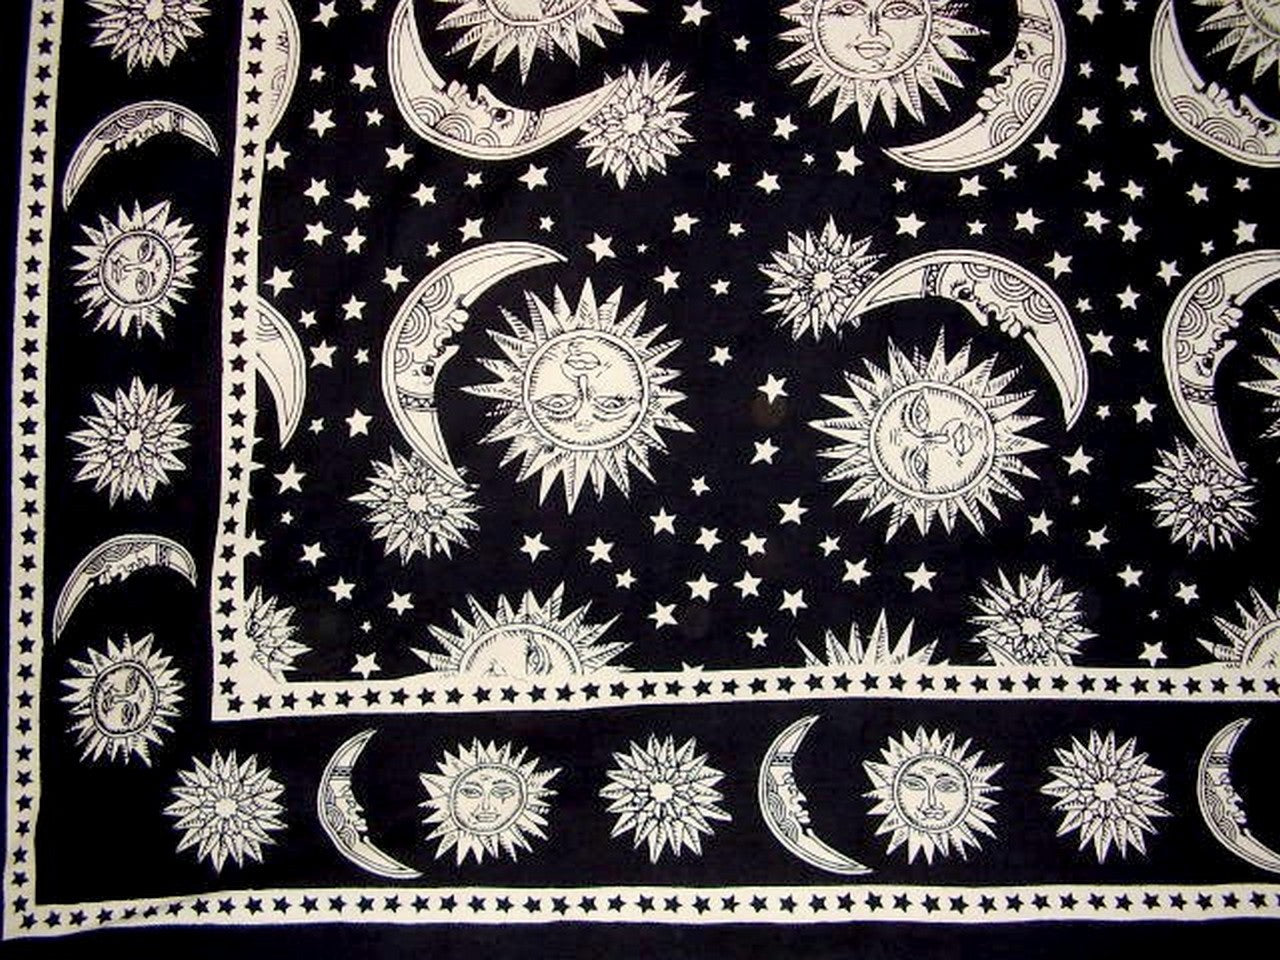 天體印花掛毯棉質床罩 108 吋 x 88 吋全大黑色